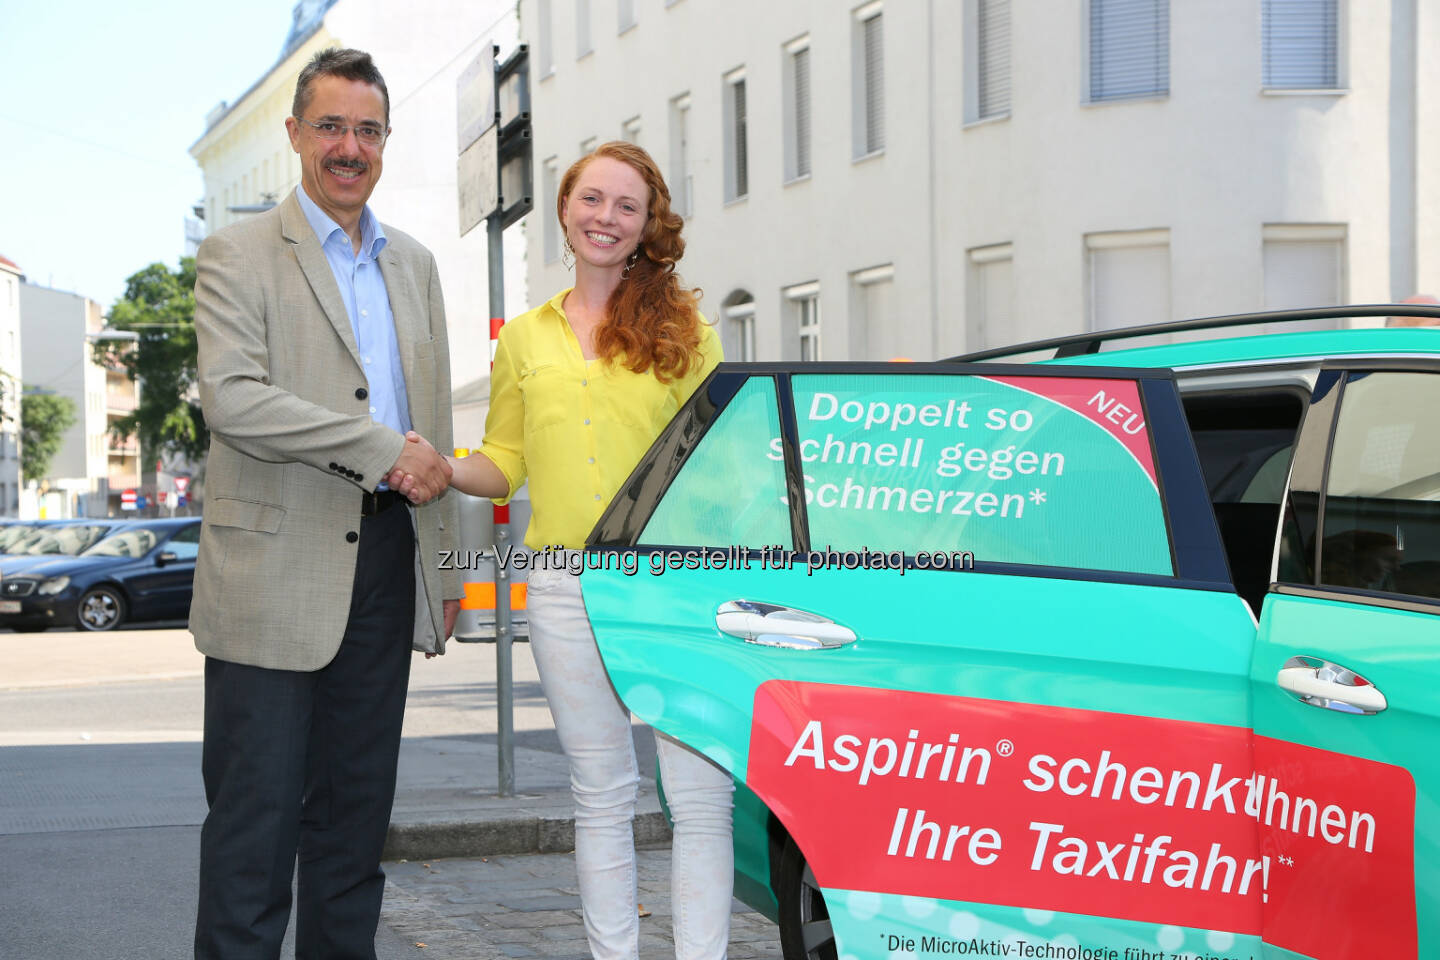 Martin Hagenlocher (Bayer Austria), Caroline Dolezal - kostenlose Fahrten mit dem Aspirin®-Taxi innerhalb Wiens : © Ludwig Schedl Fotocredit: Bayer Austria GmbH/APA-Fotoservice/Schedl